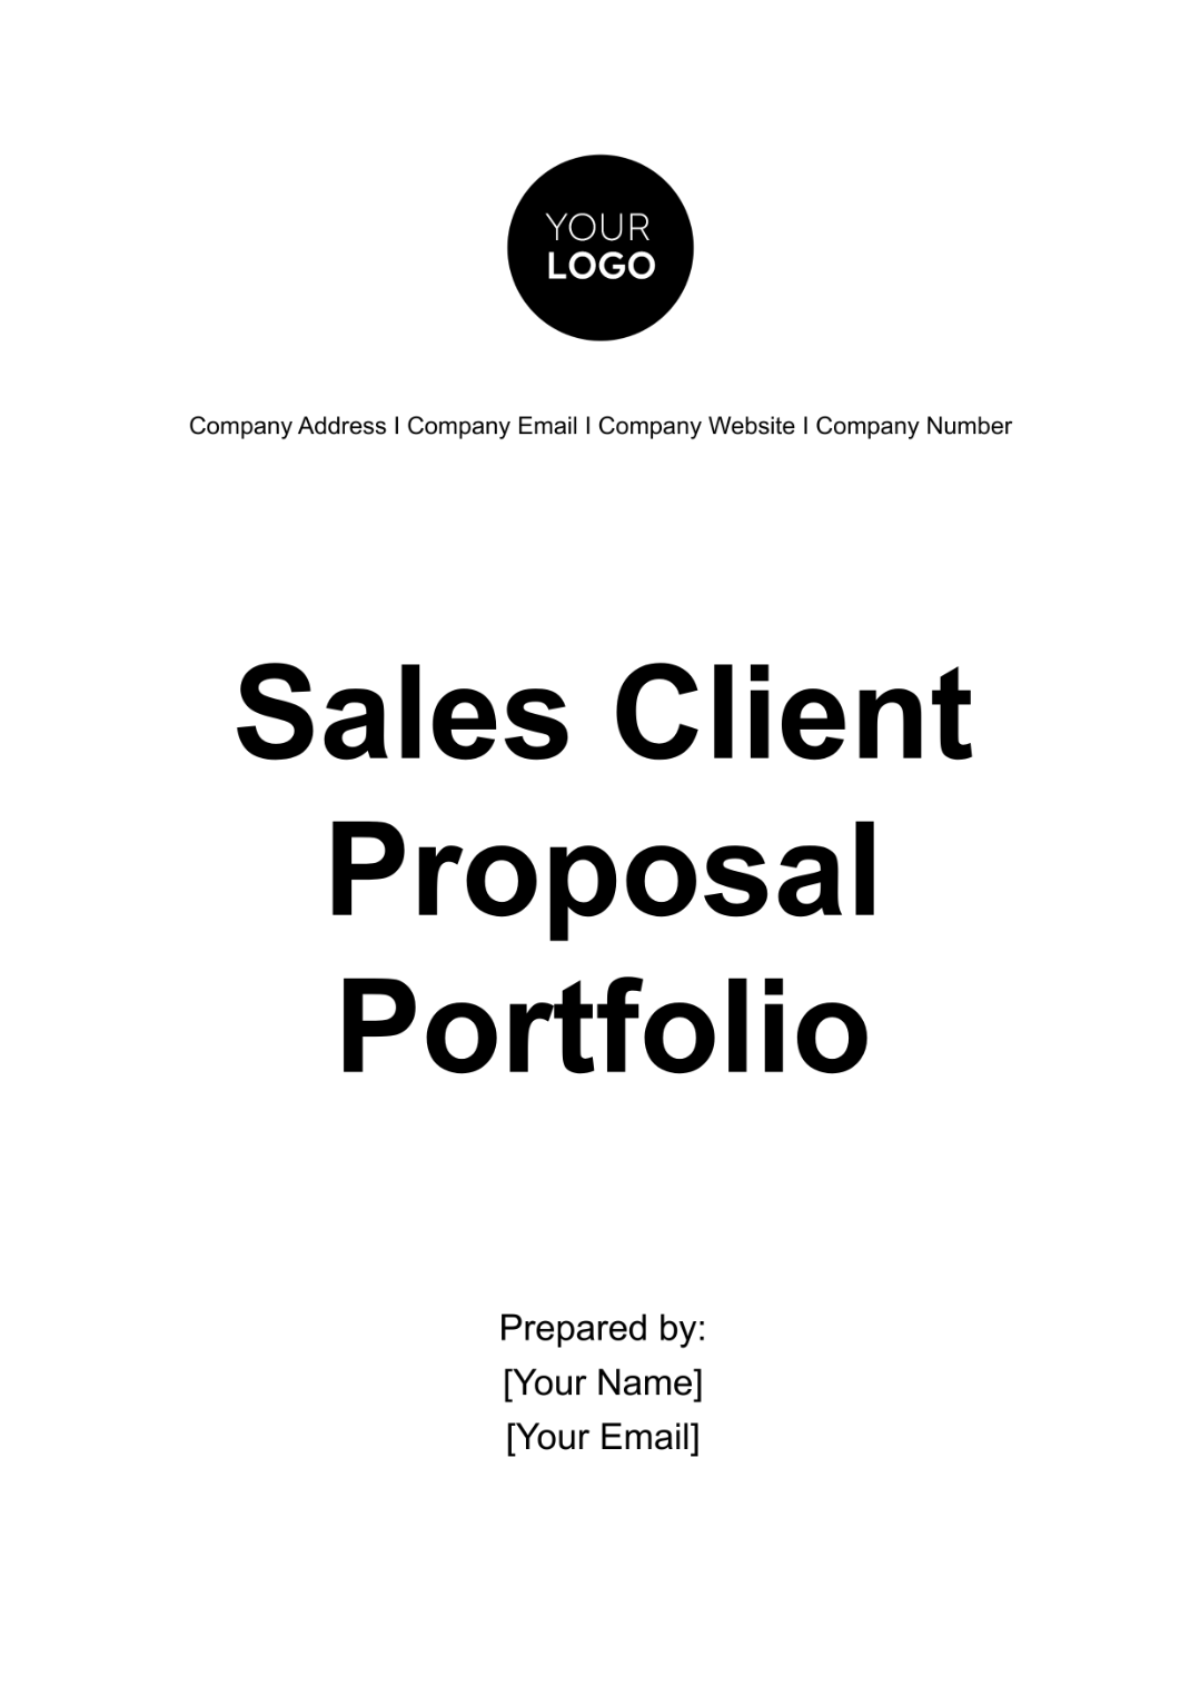 Free Sales Client Proposal Portfolio Template